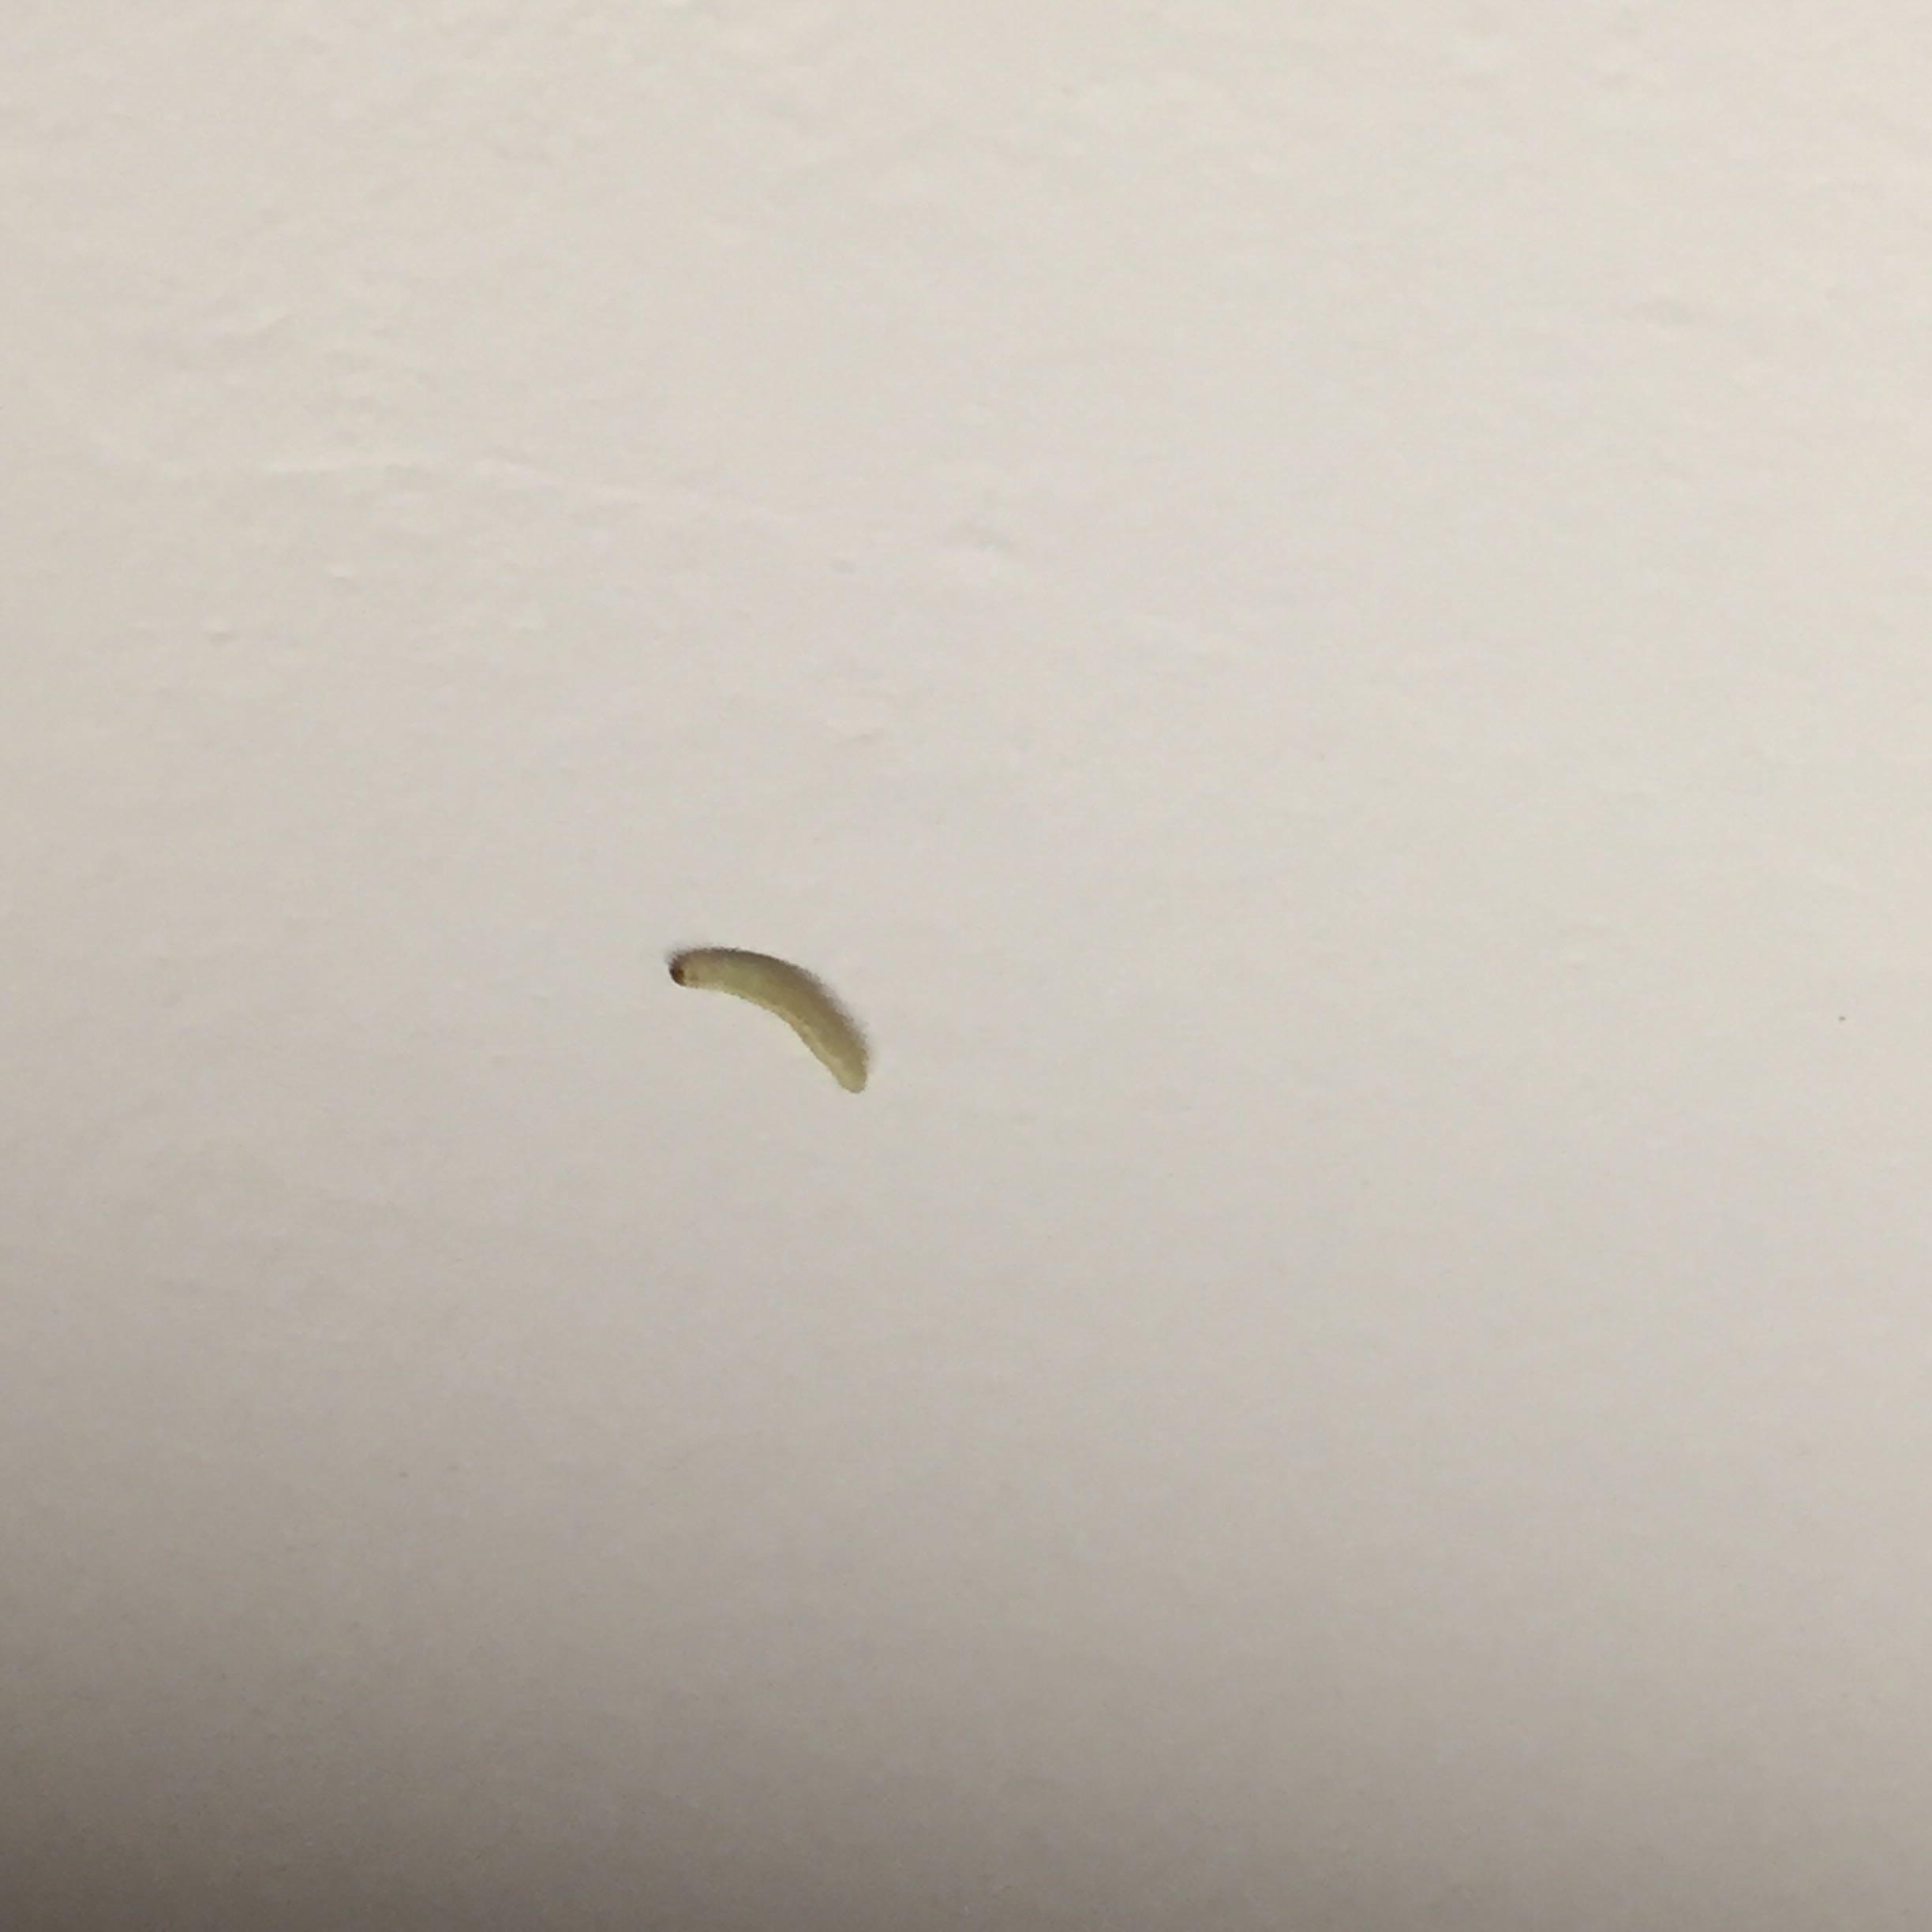 在宿舍的屋顶看到了白色蠕动小虫,长约1cm,几天后再次